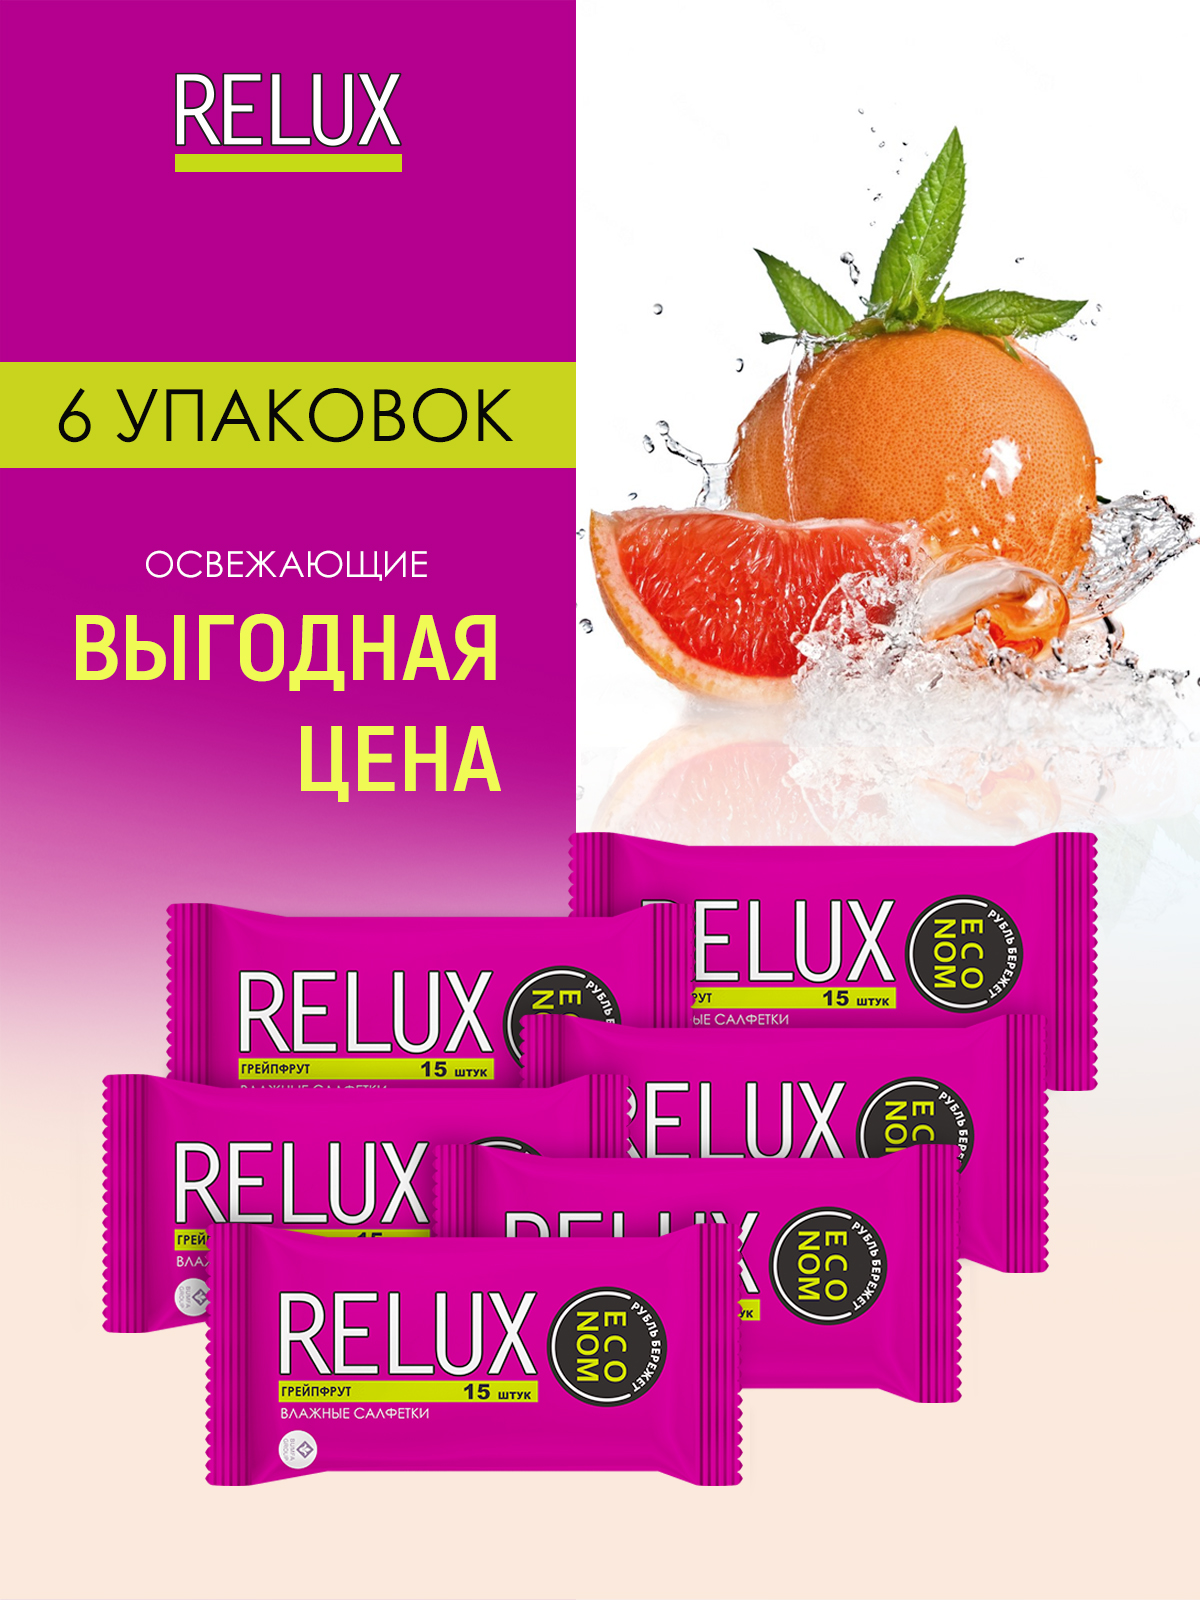 Салфетки влажные Relux освежающие грейпфрут 15шт 6 упаковок relux салфетки влажные освежающие 100 0